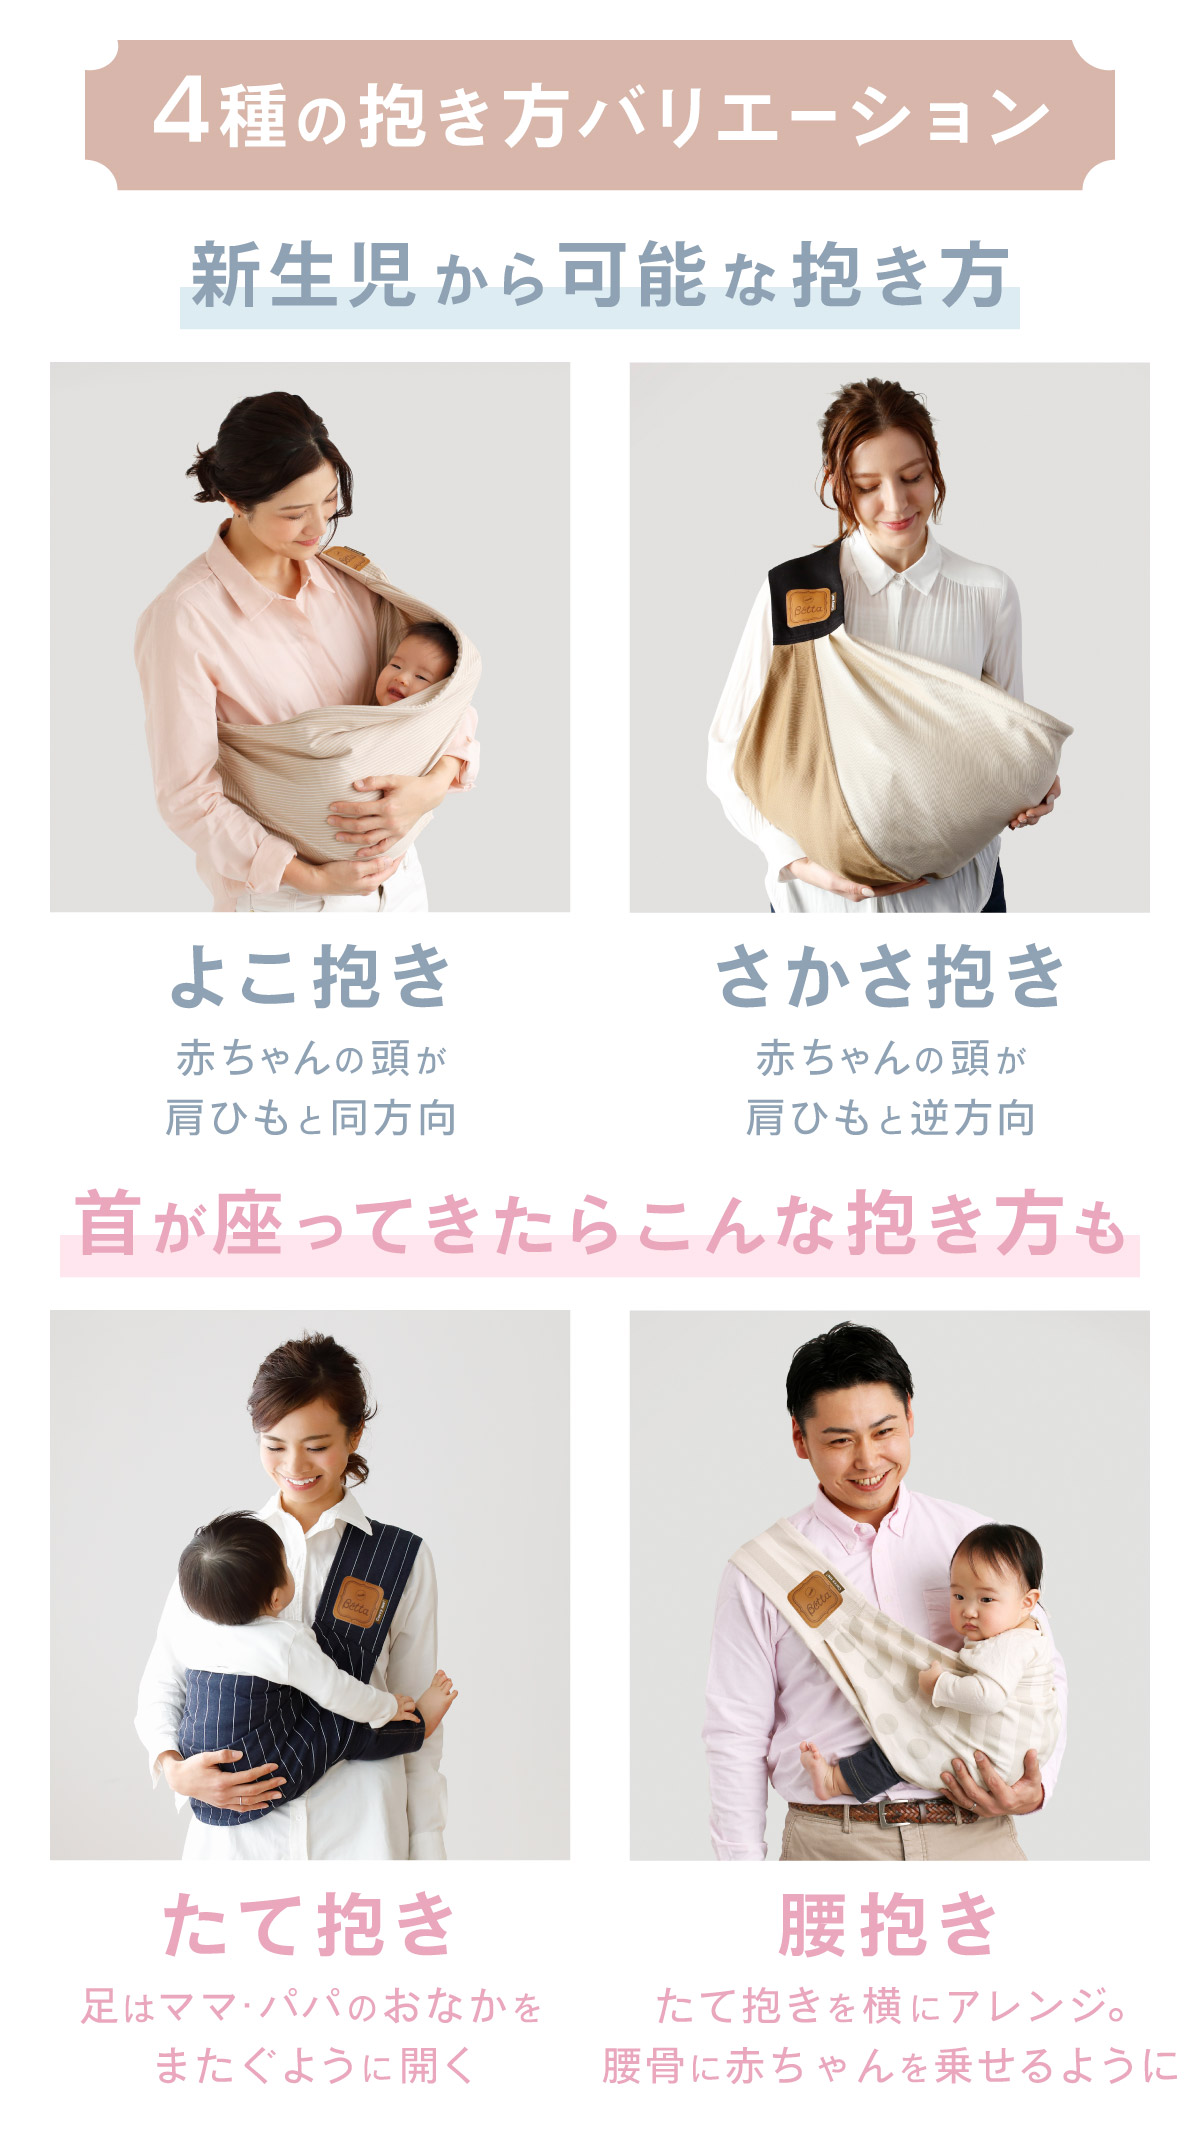 新作 ベッタ Betta キャリーミー スリング 抱っこ紐 日本製 はじめてでも安心。コンパクトで簡単な抱っこひも  :carryem-renew201905:Baby ALICE - 通販 - Yahoo!ショッピング